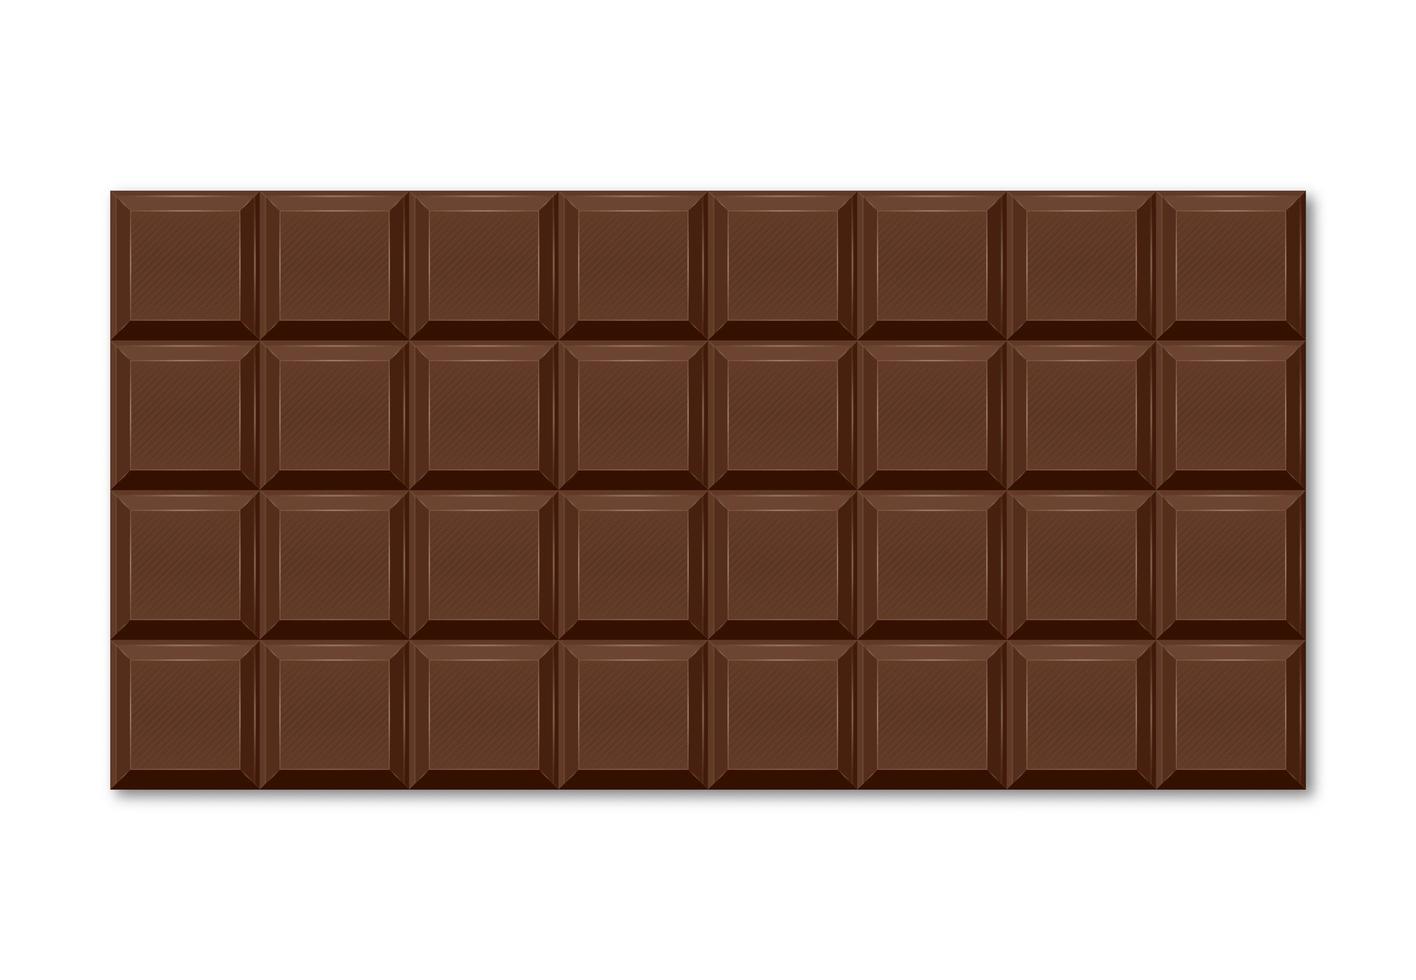 realistische Darstellung der braunen Schokoladentafel mit rechteckigen Scheiben. vektor